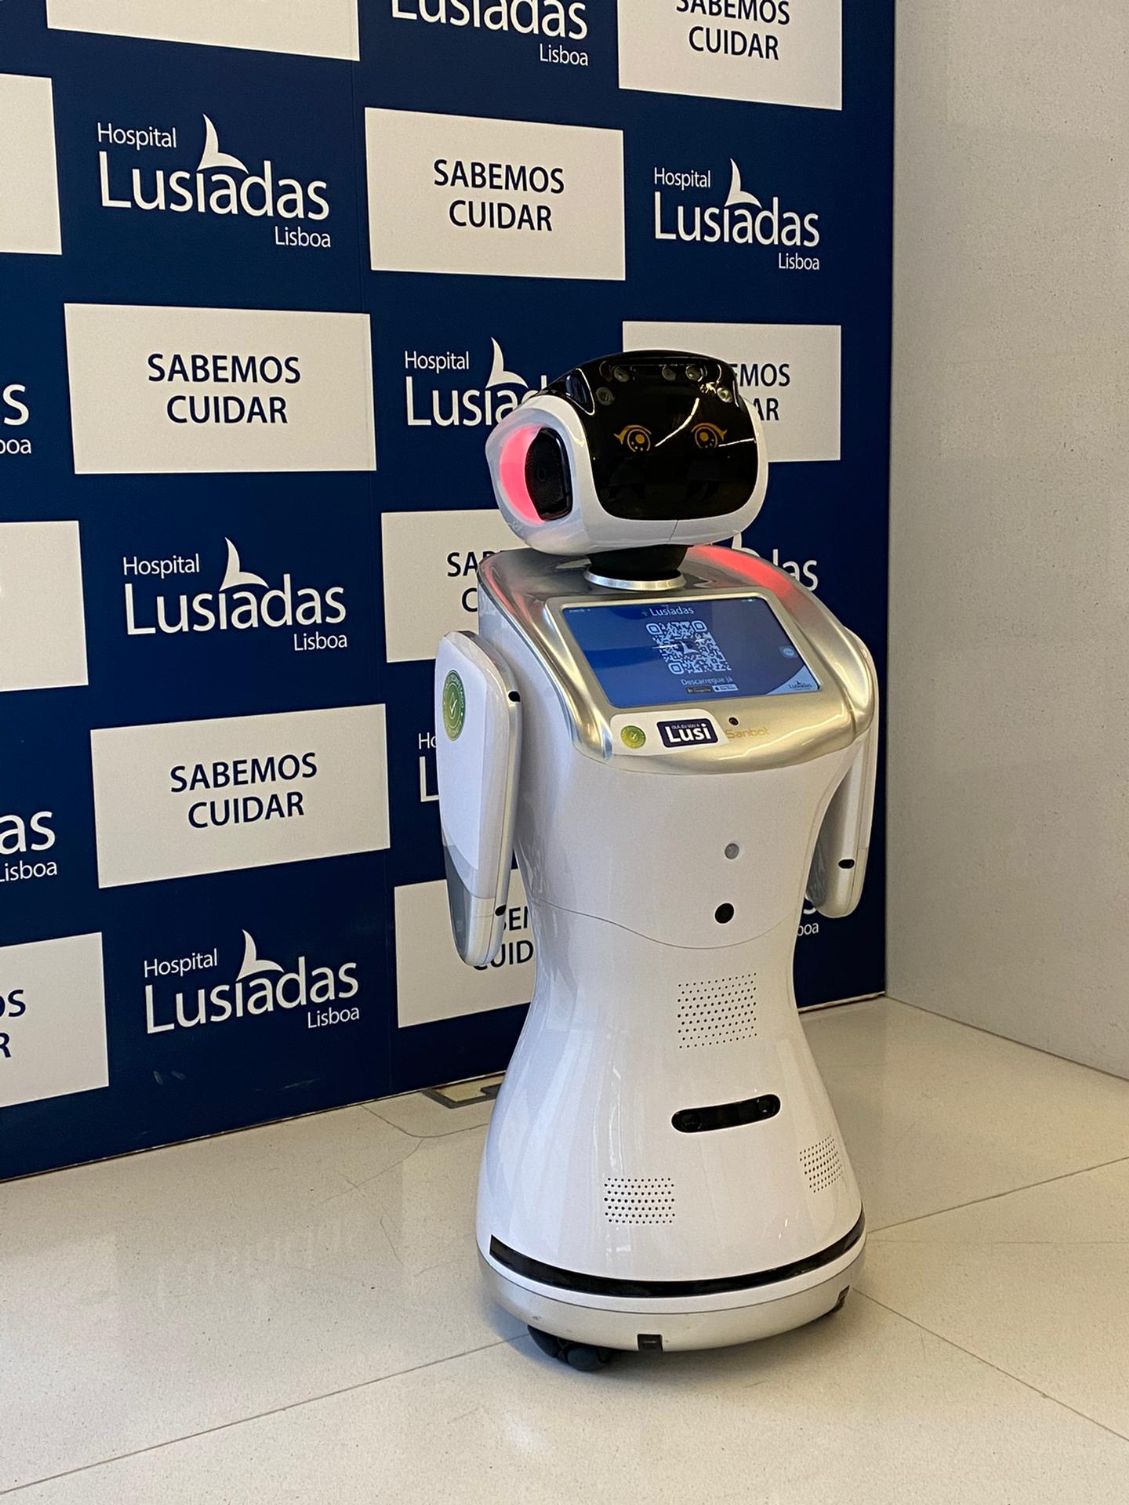 Lusíadas Saúde promove nova app com robot